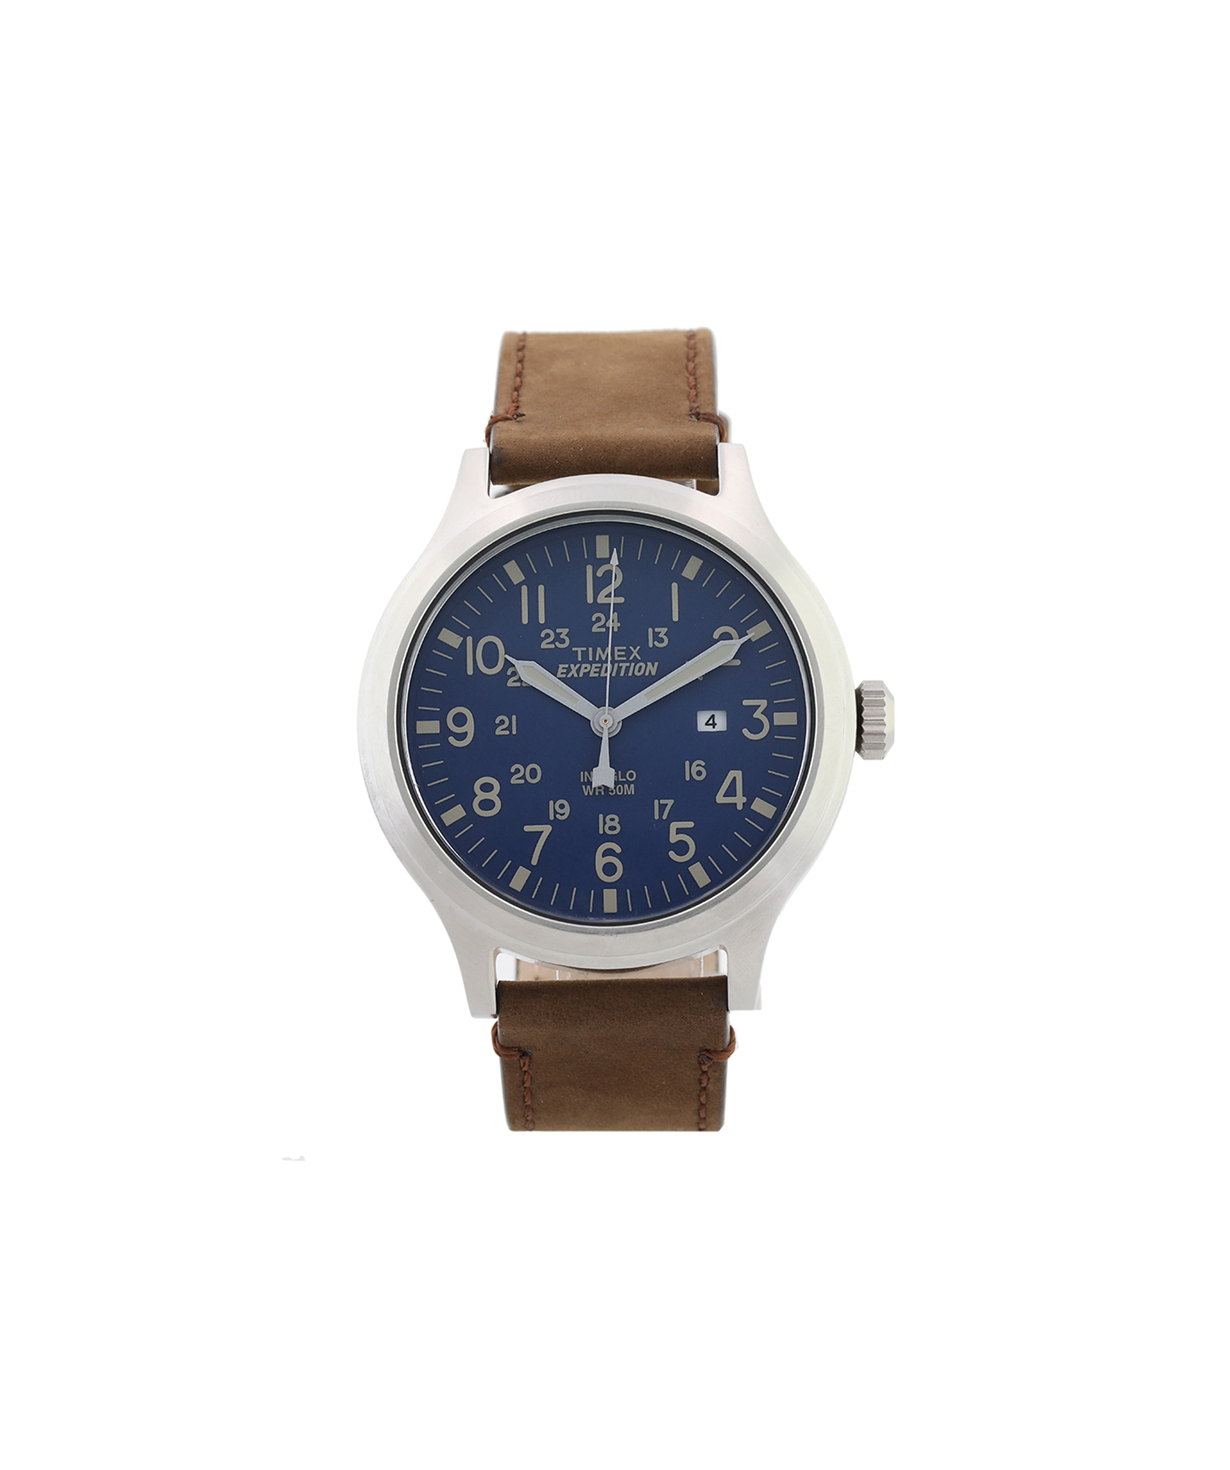 Ժամացույց «Timex» ձեռքի   TW4B06400